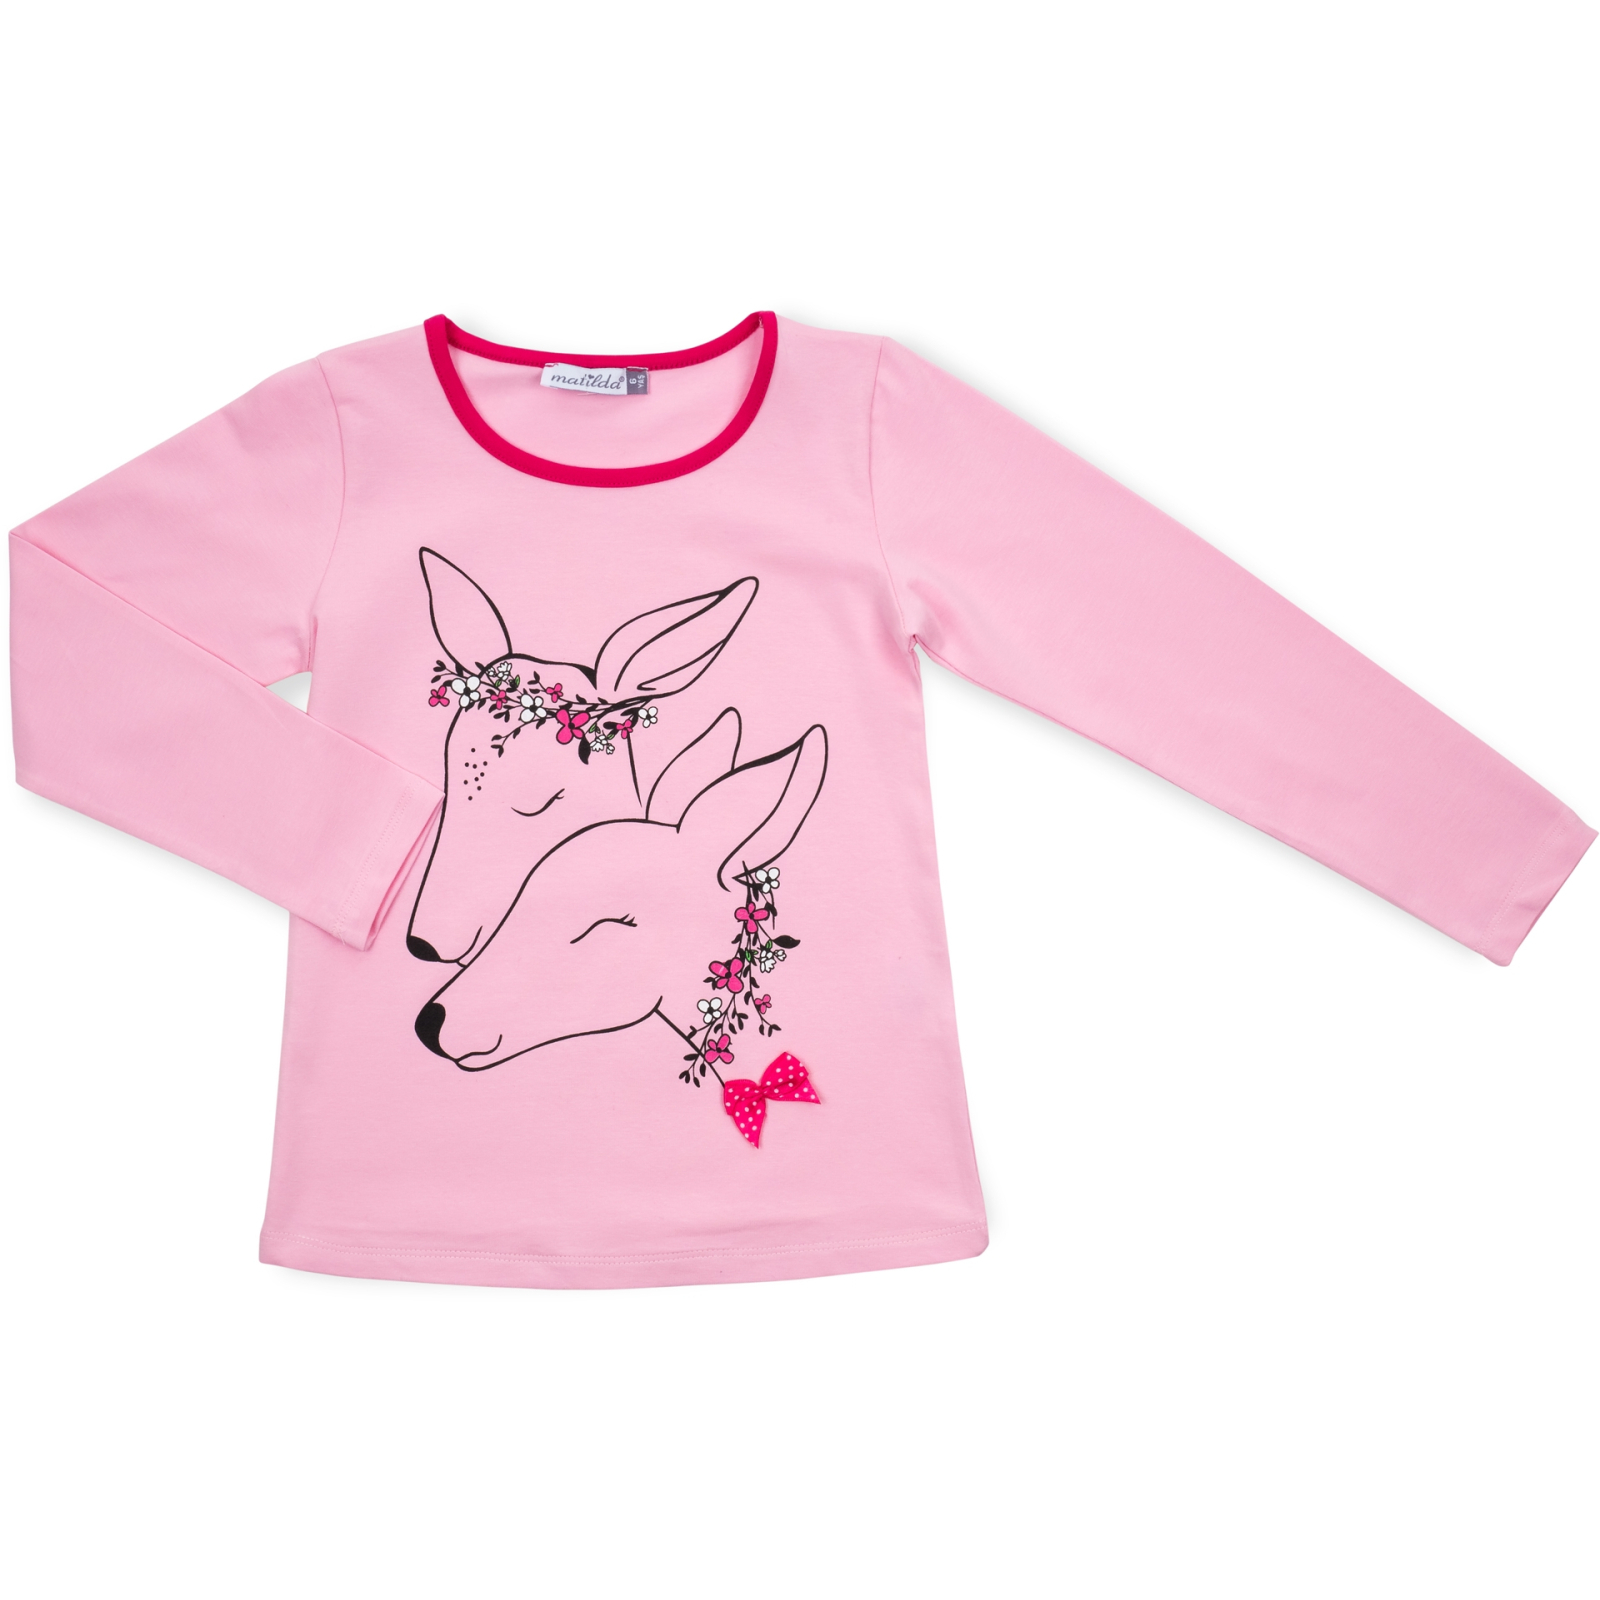 Пижама Matilda с оленями (10817-3-128G-pink) изображение 2